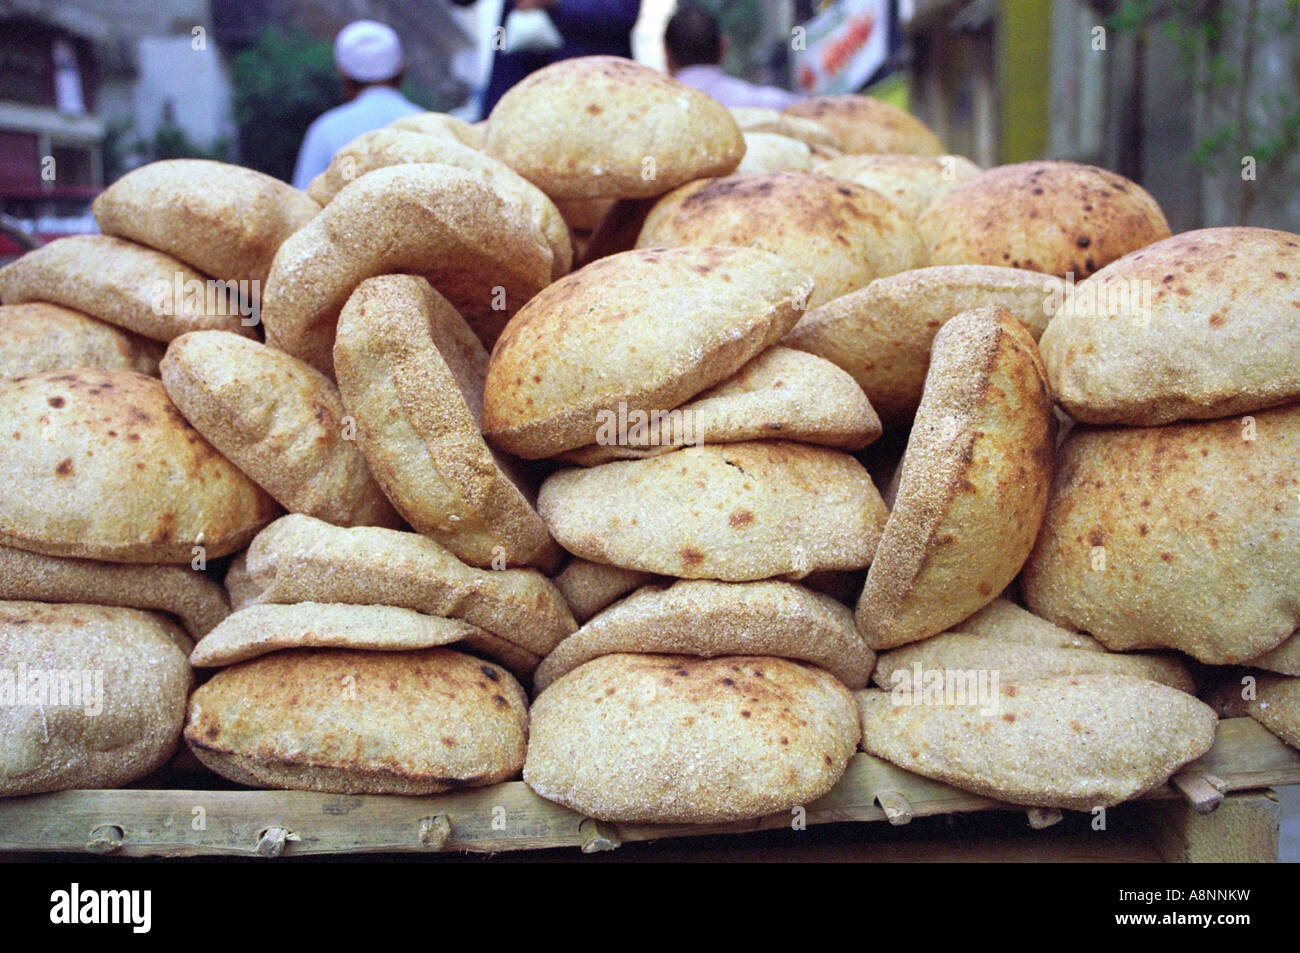 Frisches Brot - Kairo, Ägypten Stockfotografie - Alamy